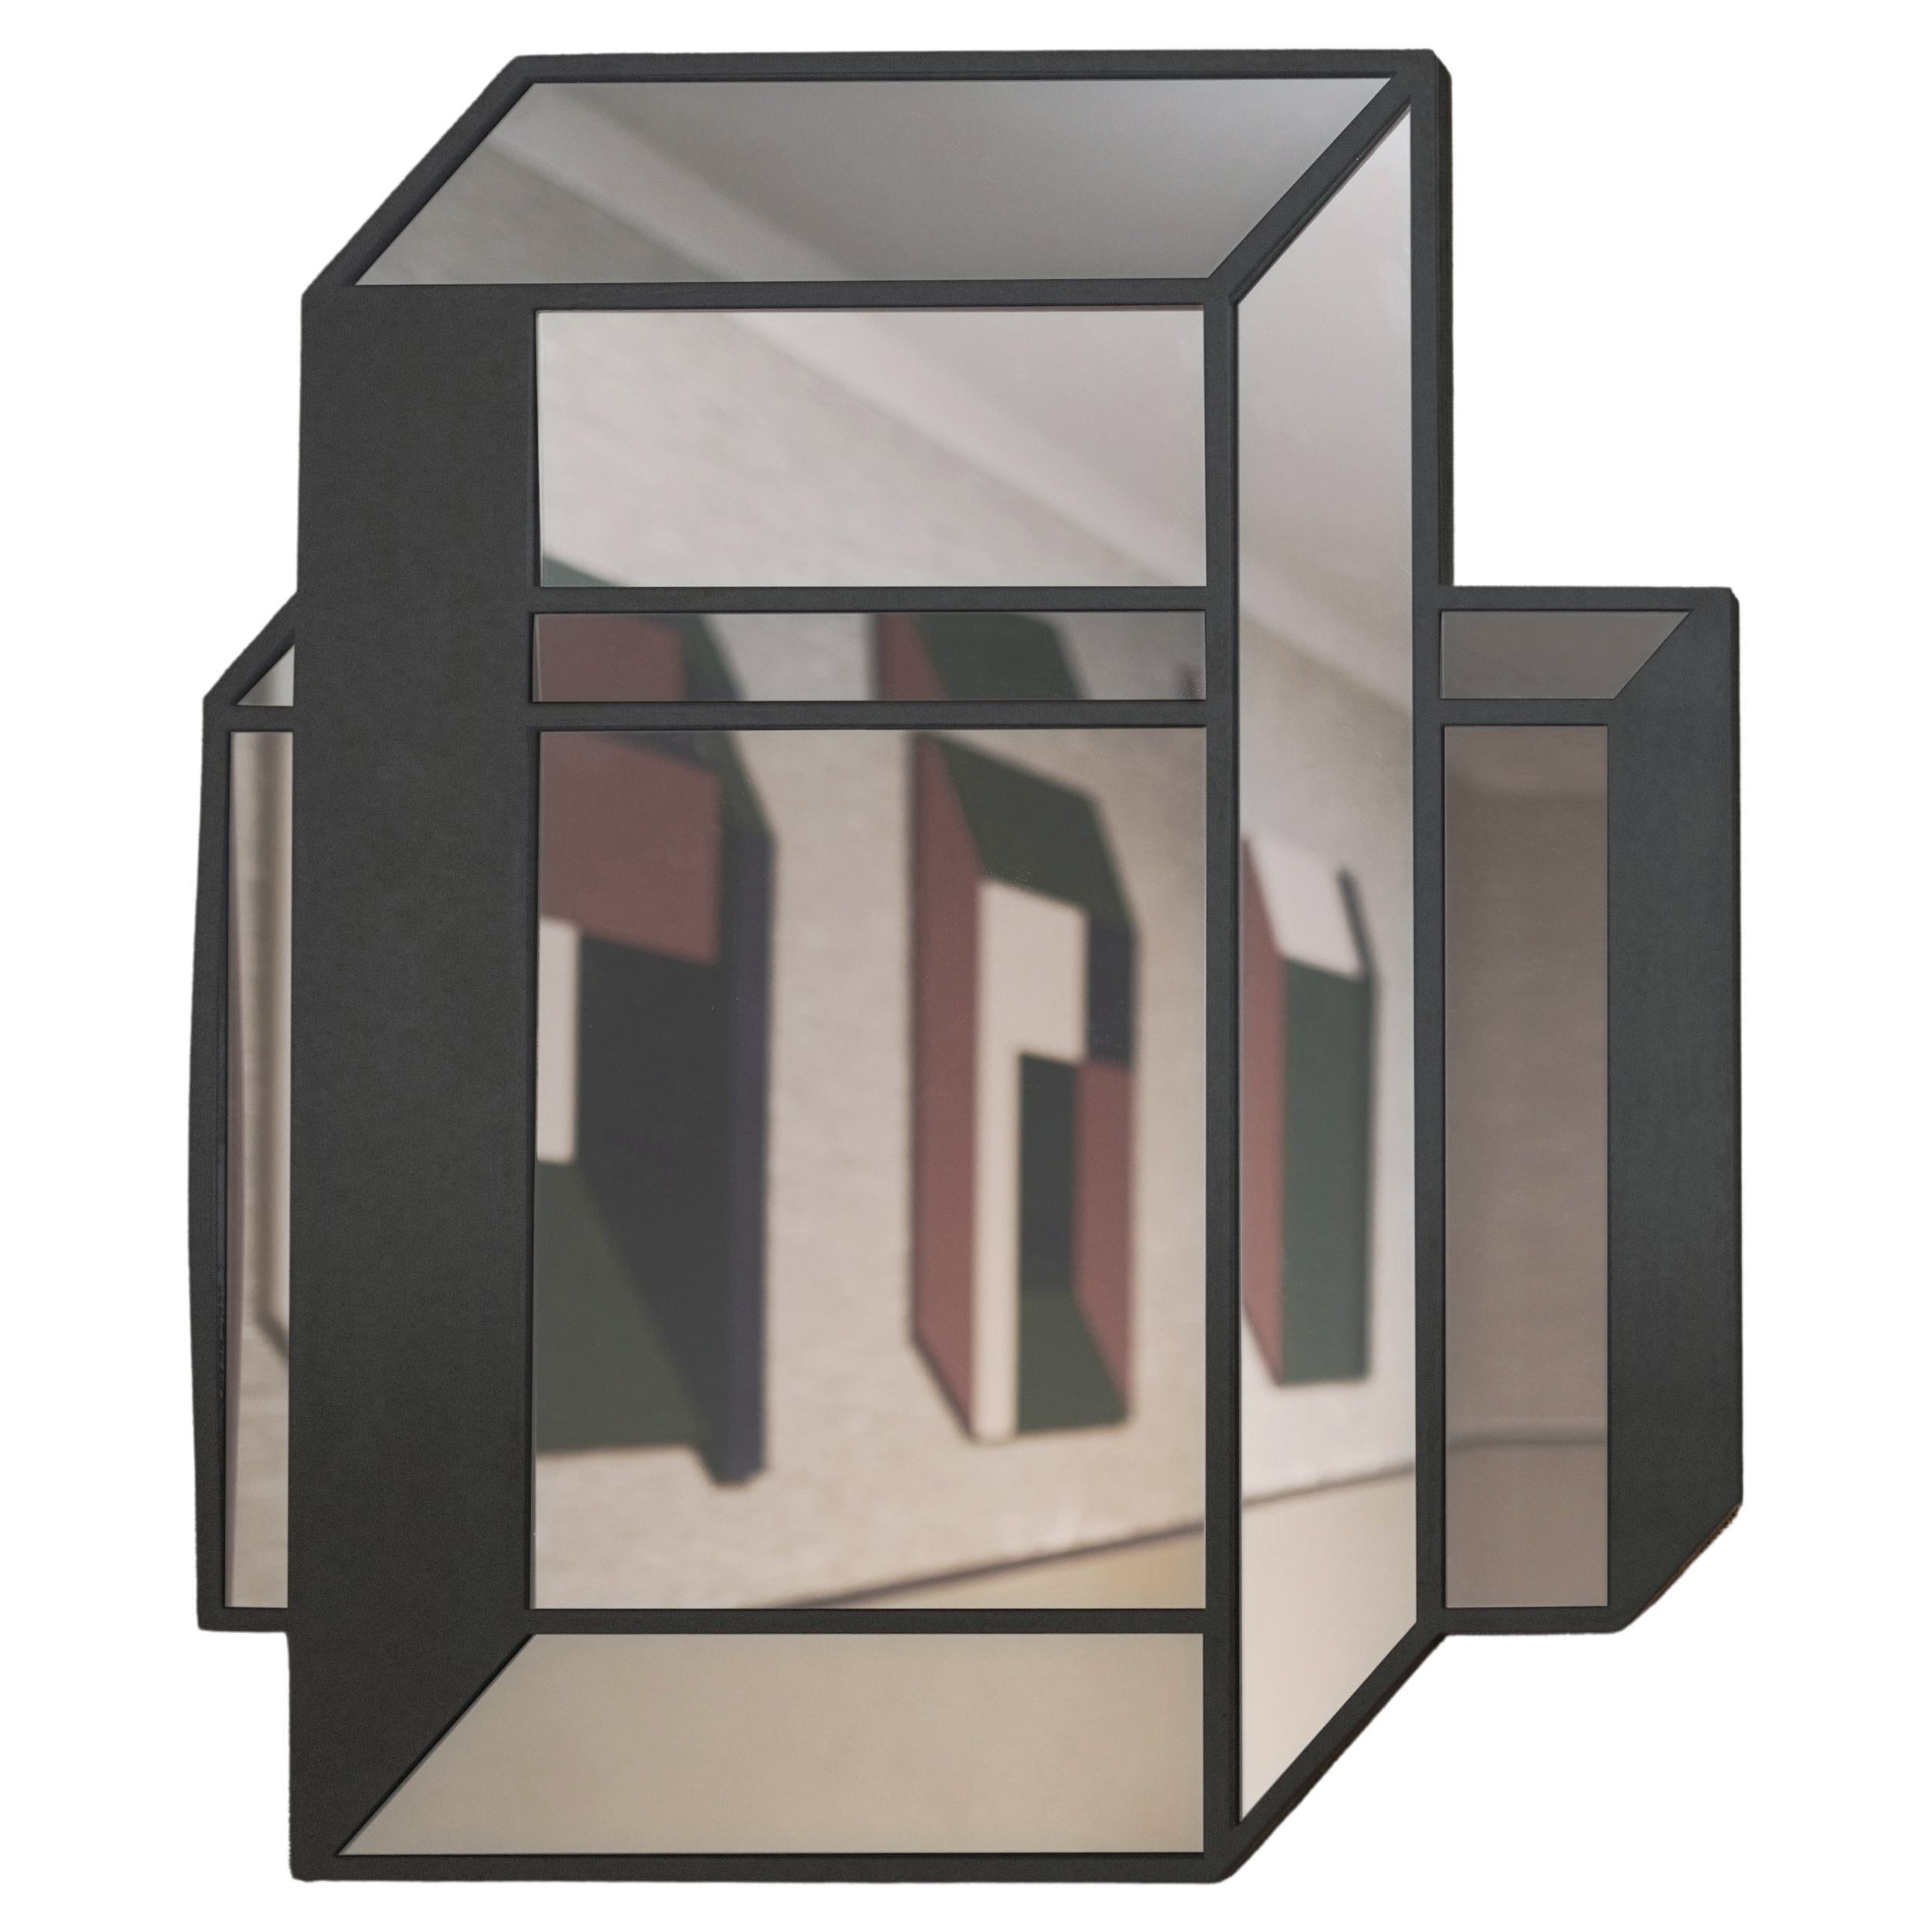 Mirror Object No.1 by Dechem Studio